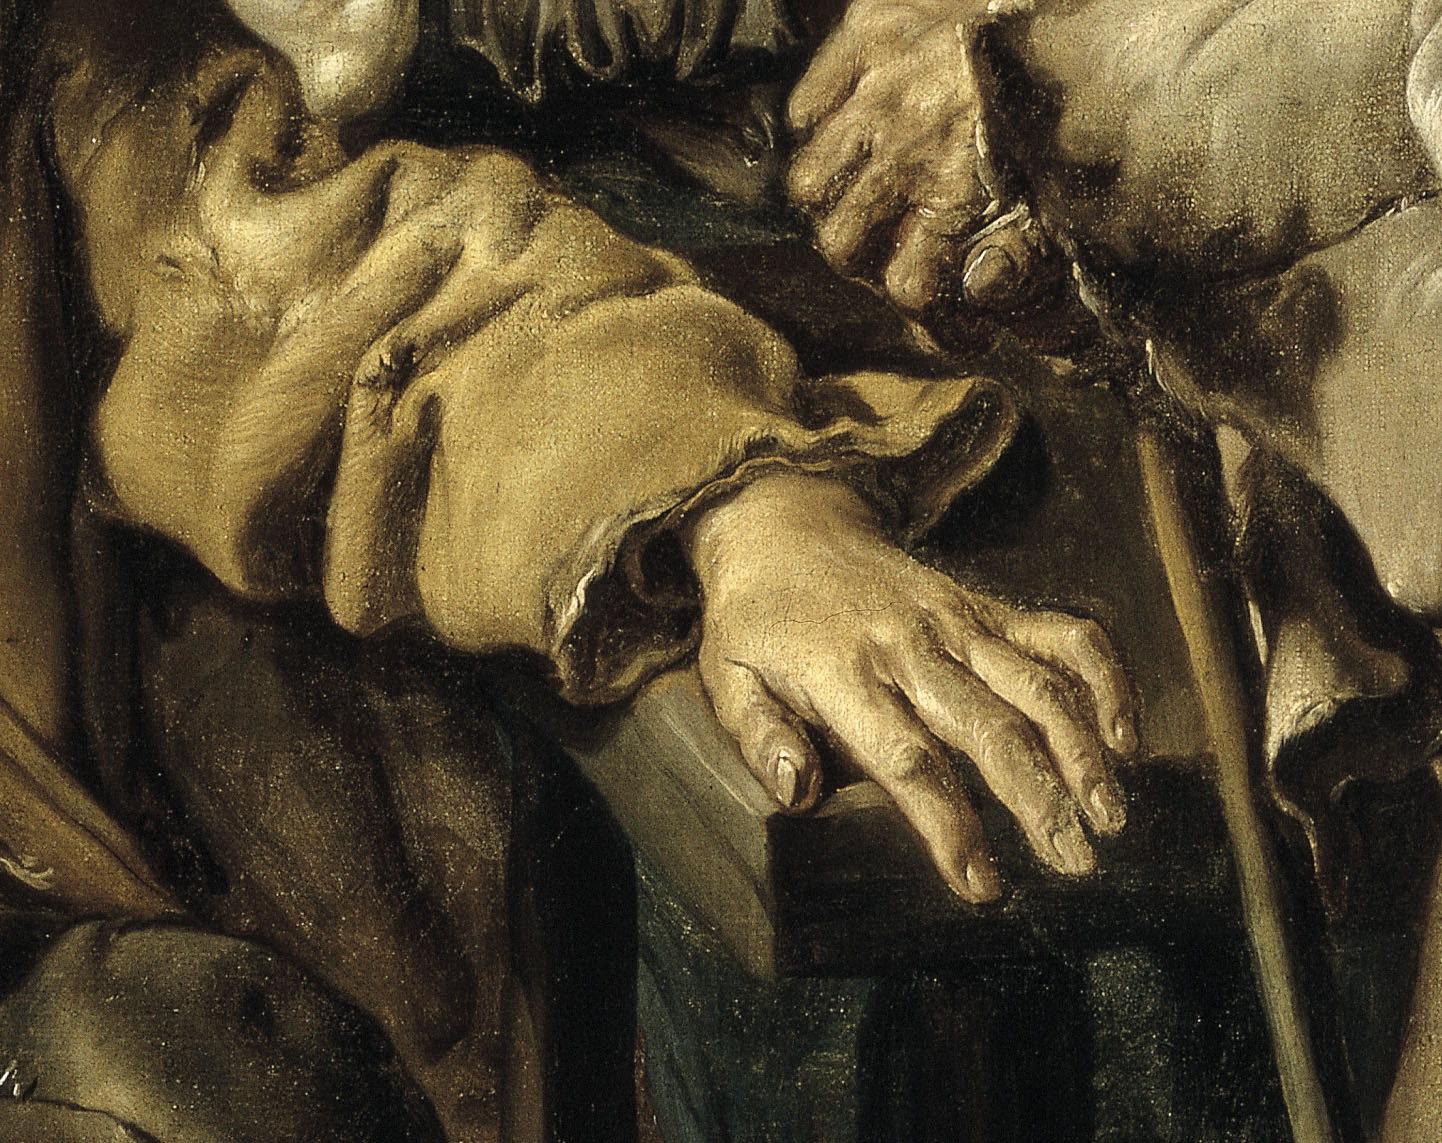 Three Beggars (detail), Giacomo Ceruti, known as Il Pittocchetto, 1736. Thyssen-Bornesmiza Collection (on long-term loan to the Museu Nacional).